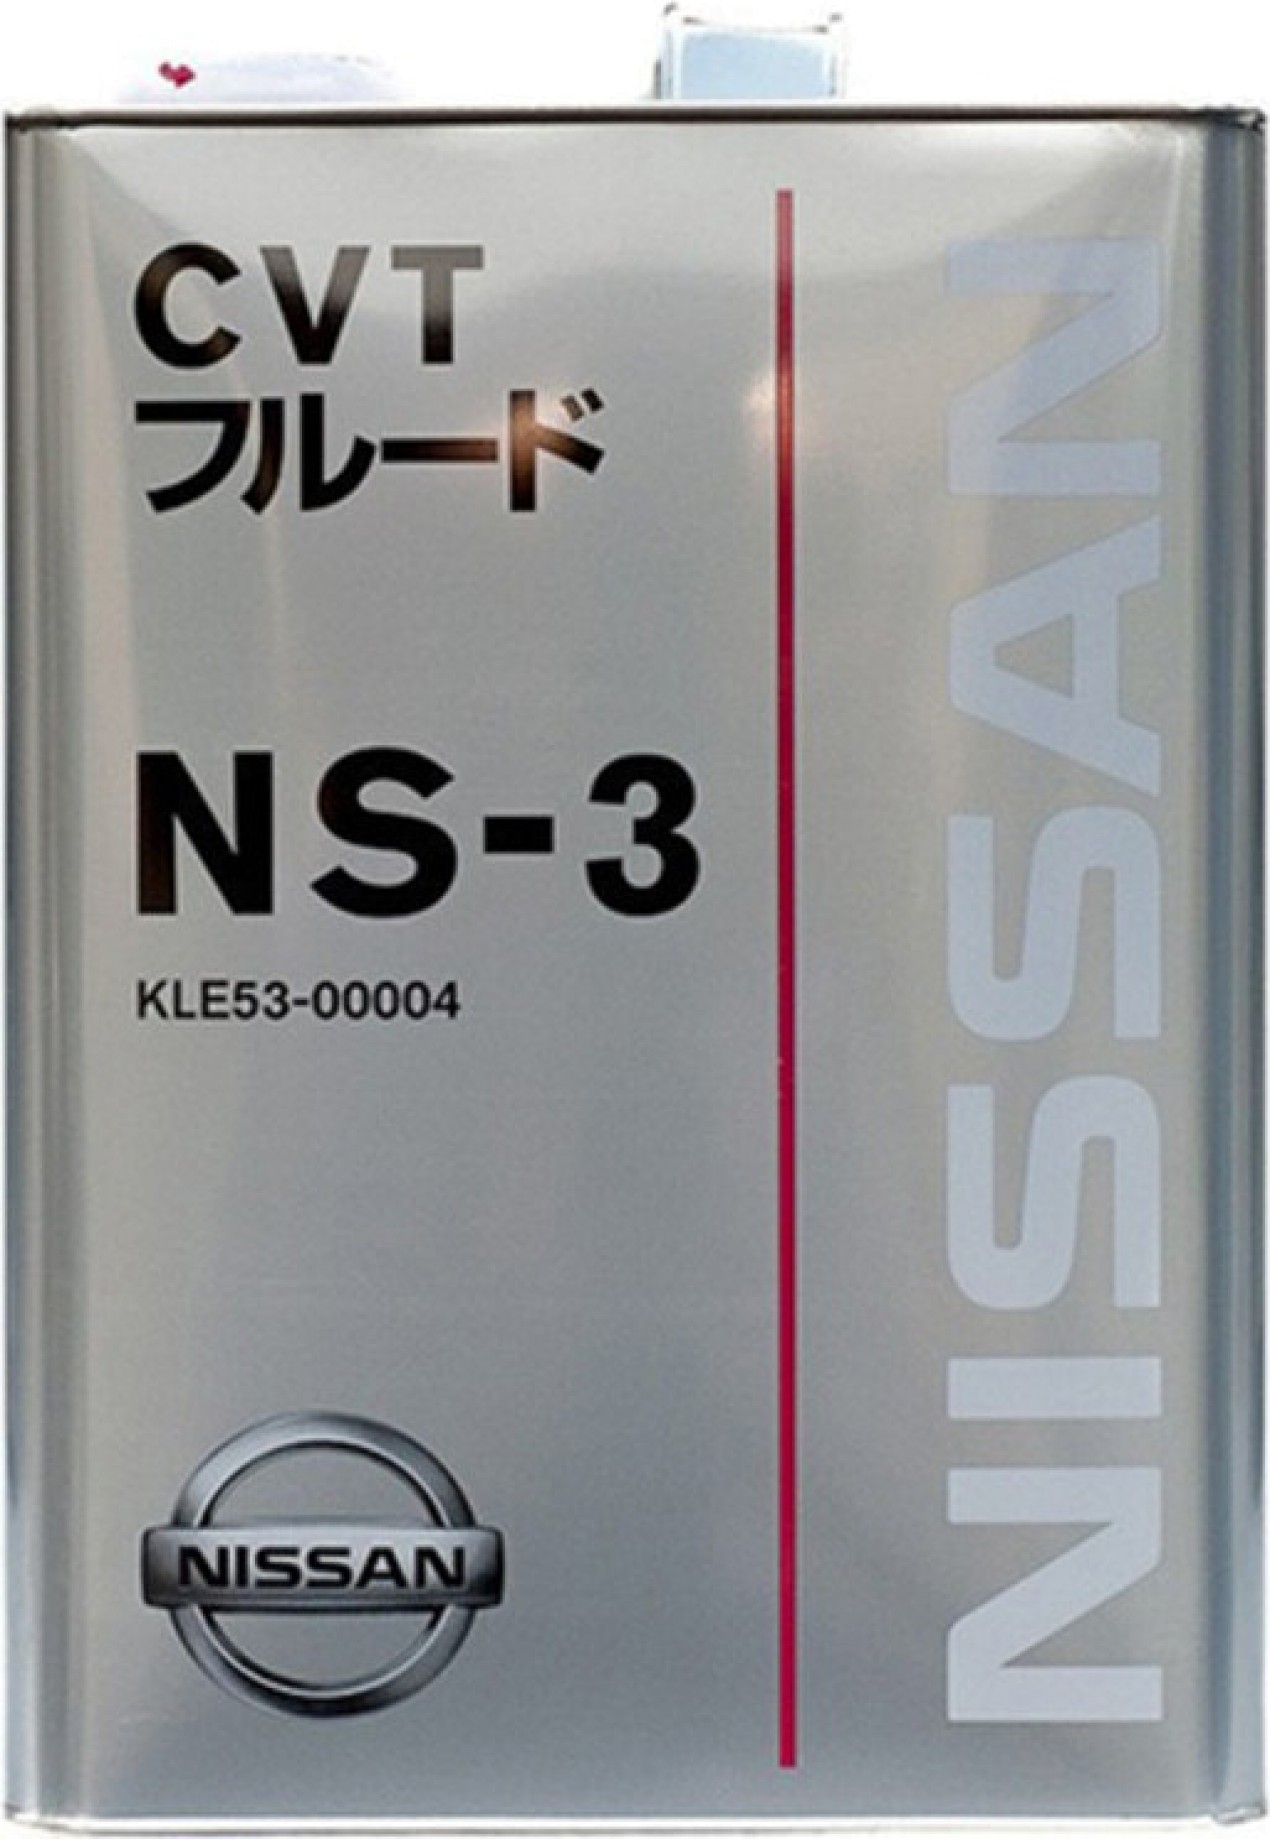 Масло трансмиссионное nissan cvt ns-3, 4л 